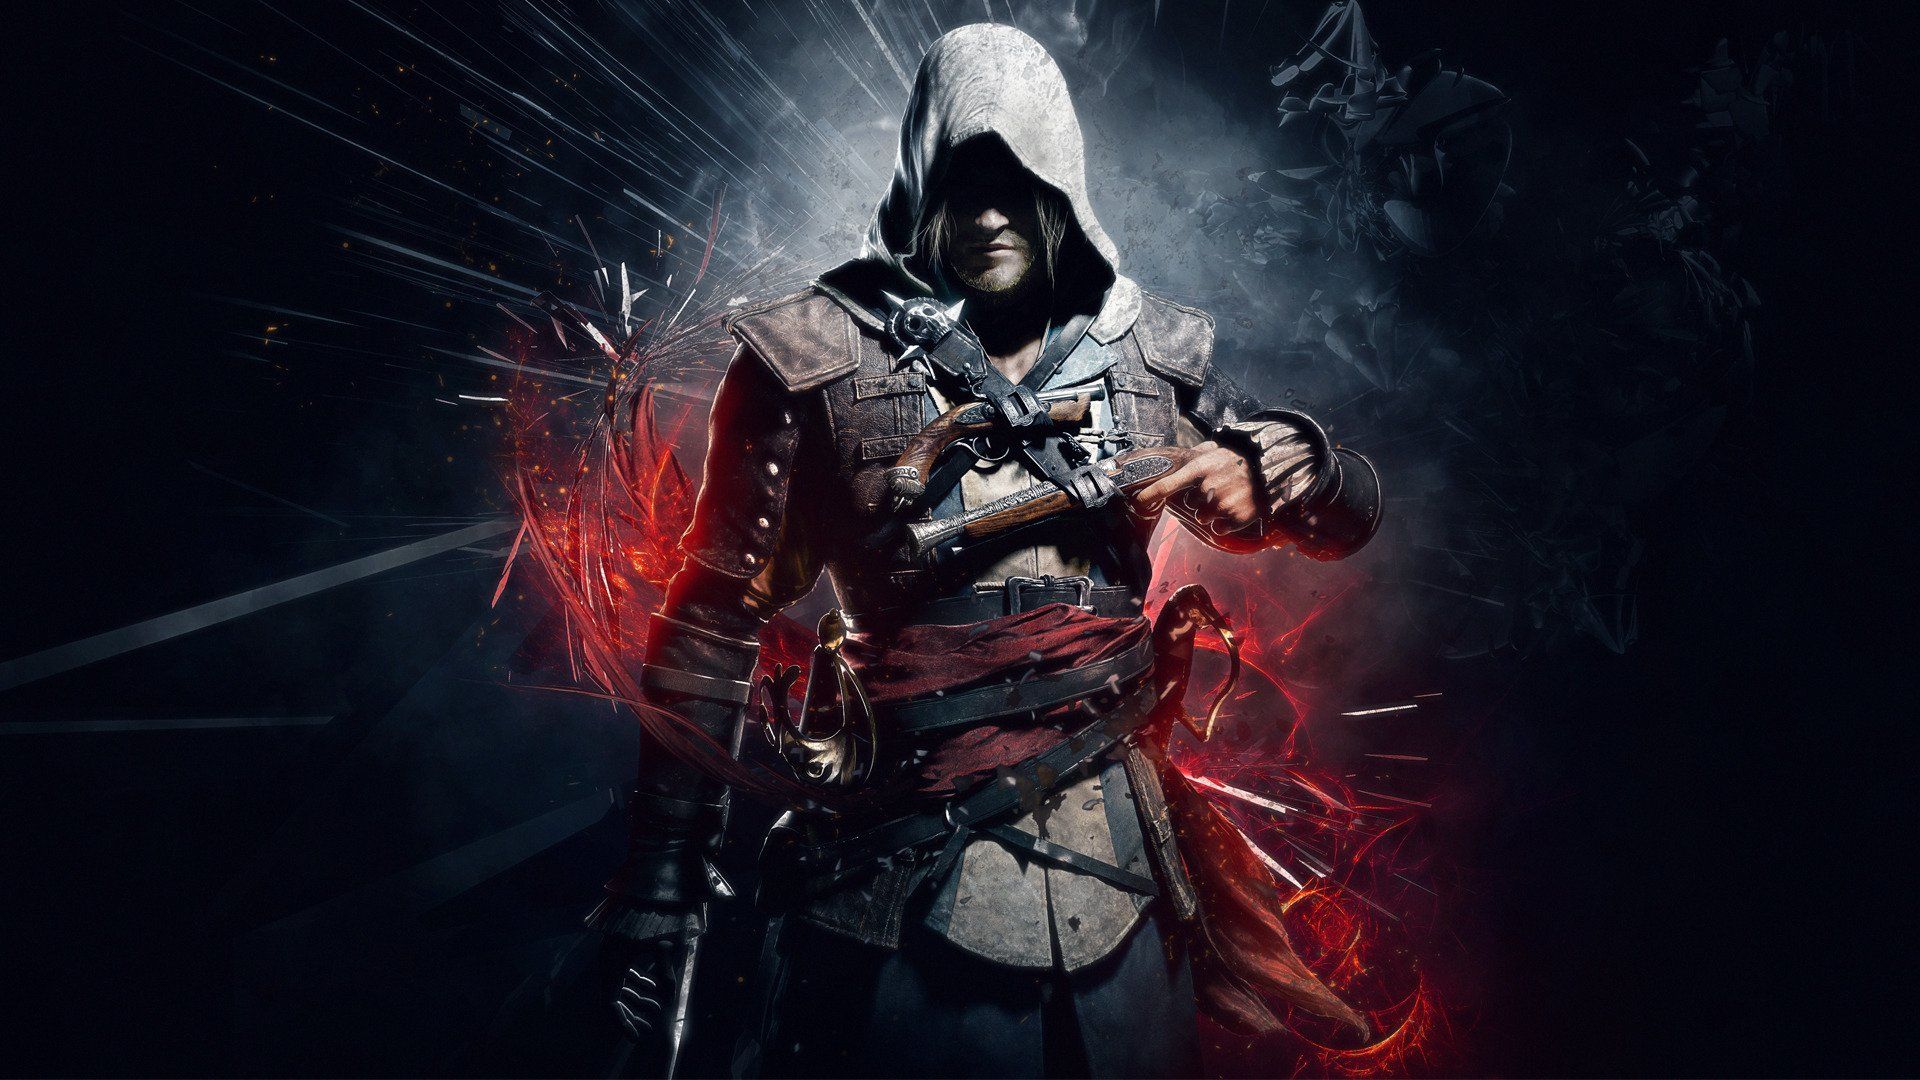 3D Assassin's Creed Wallpapers - Top Những Hình Ảnh Đẹp